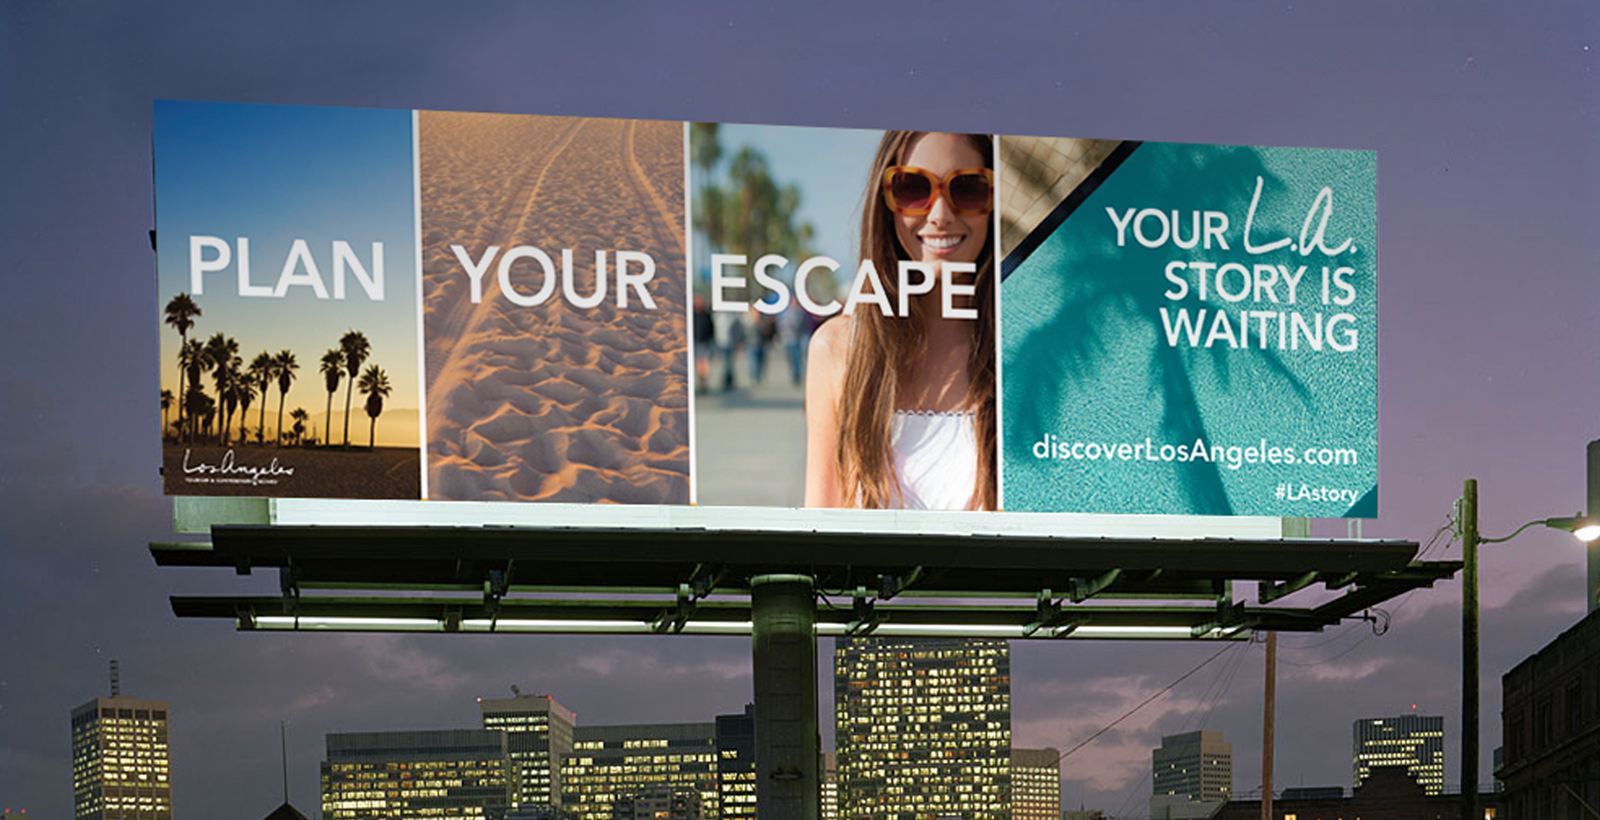 LA Tourism Billboard Ad Plan your escape your LA story is waiting